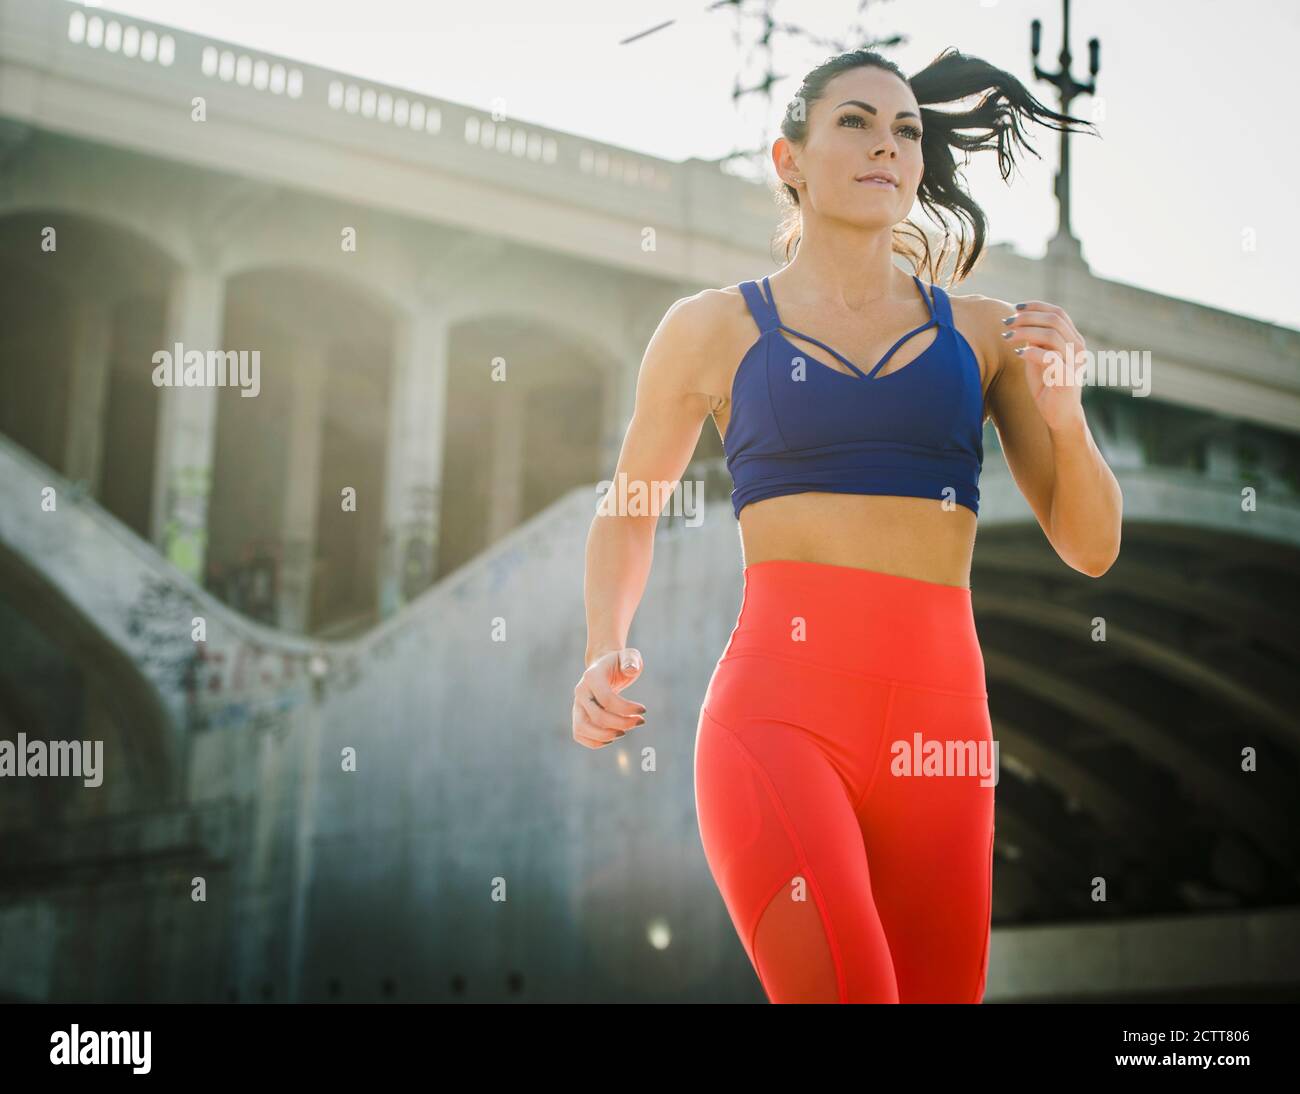 USA, Kalifornien, Los Angeles, Sportliche Frau beim Joggen im urbanen Umfeld Stockfoto